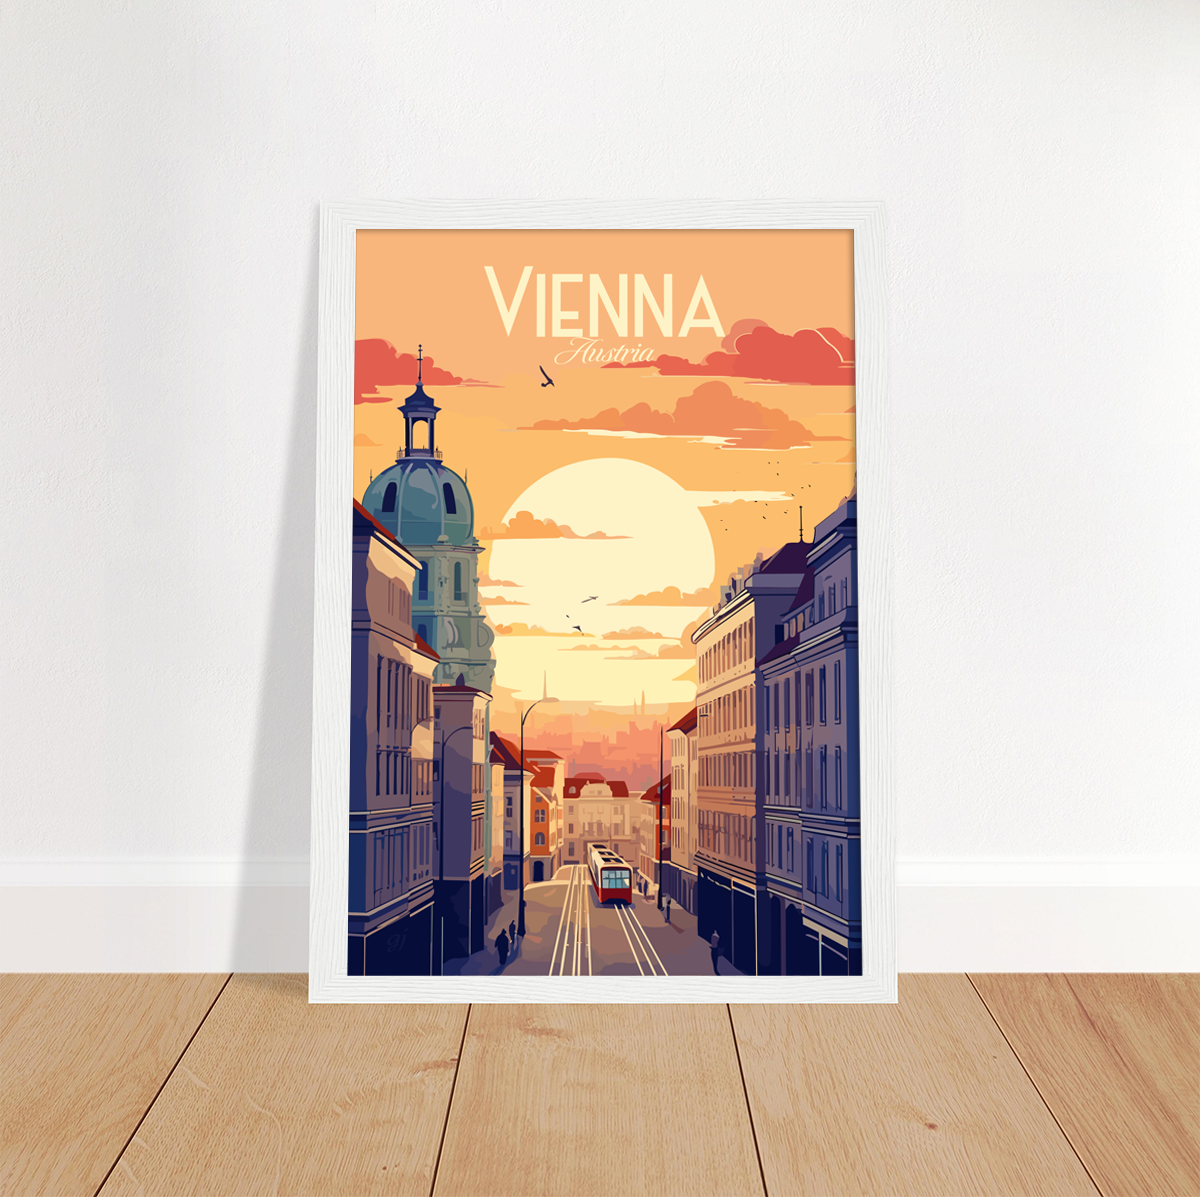 Vienna poster by bon voyage design